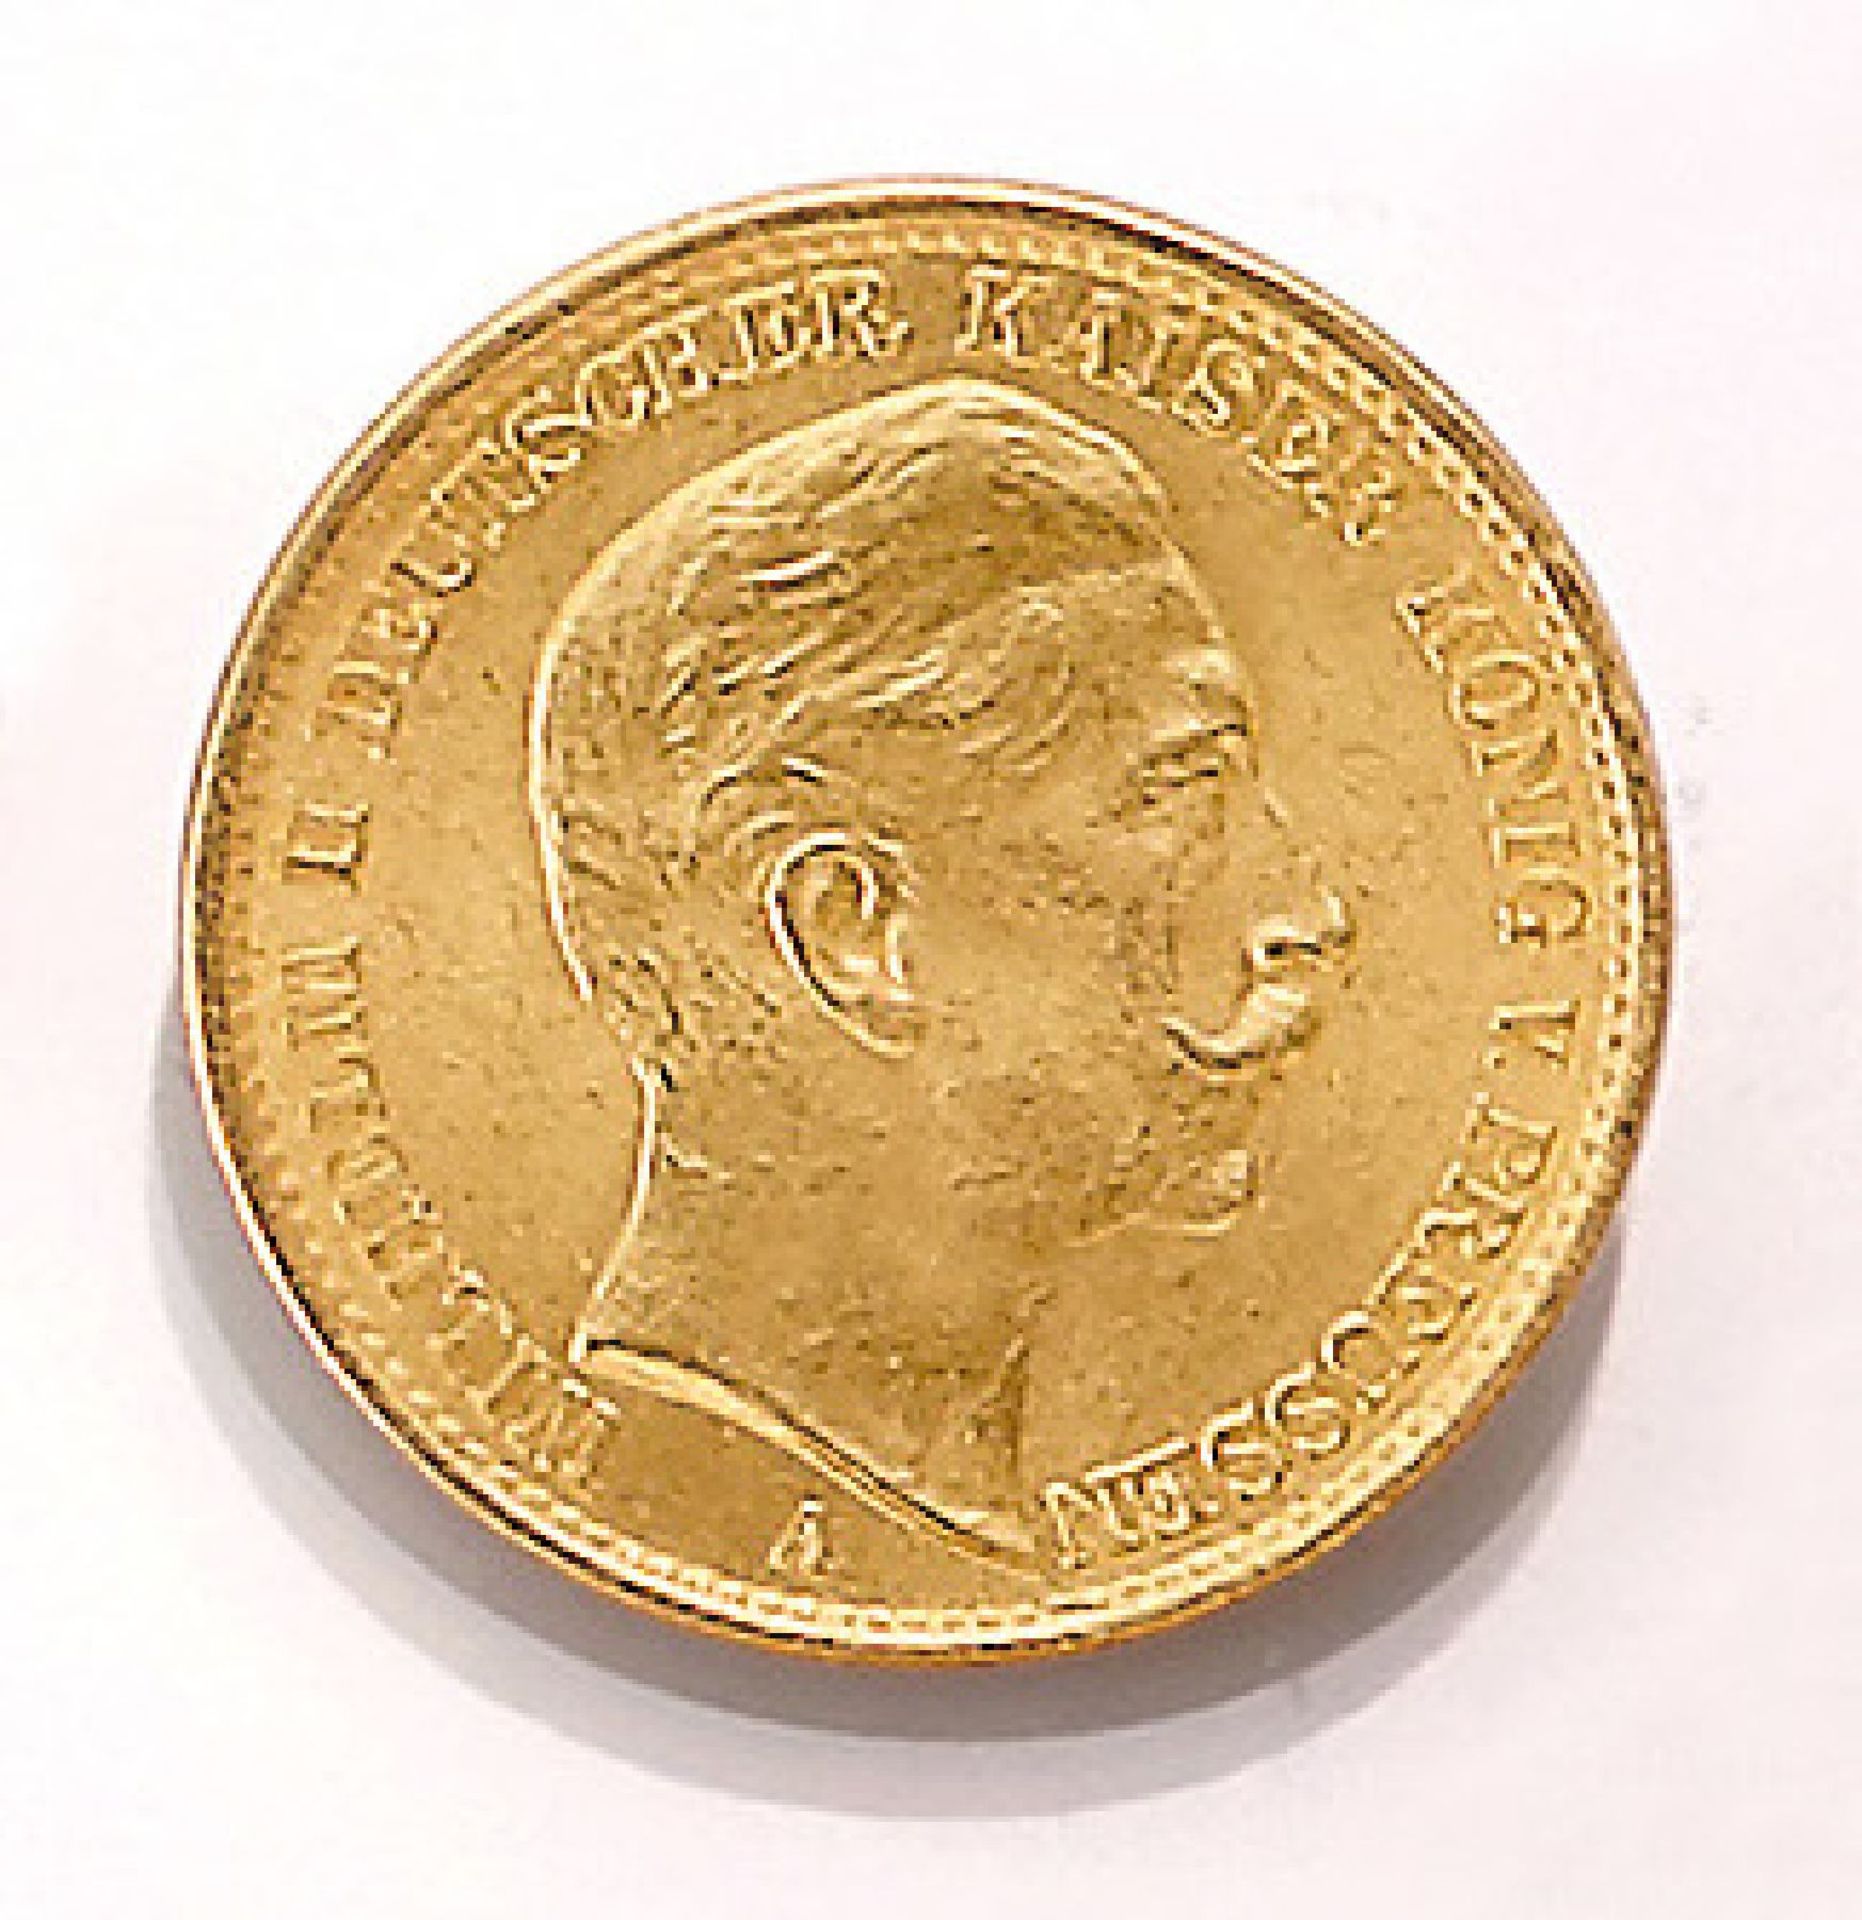 Goldmünze 20 Mark 1912, Wilhelm II., Deutscher Kaiser, König von Preussen, Prägeort AGold coin 20